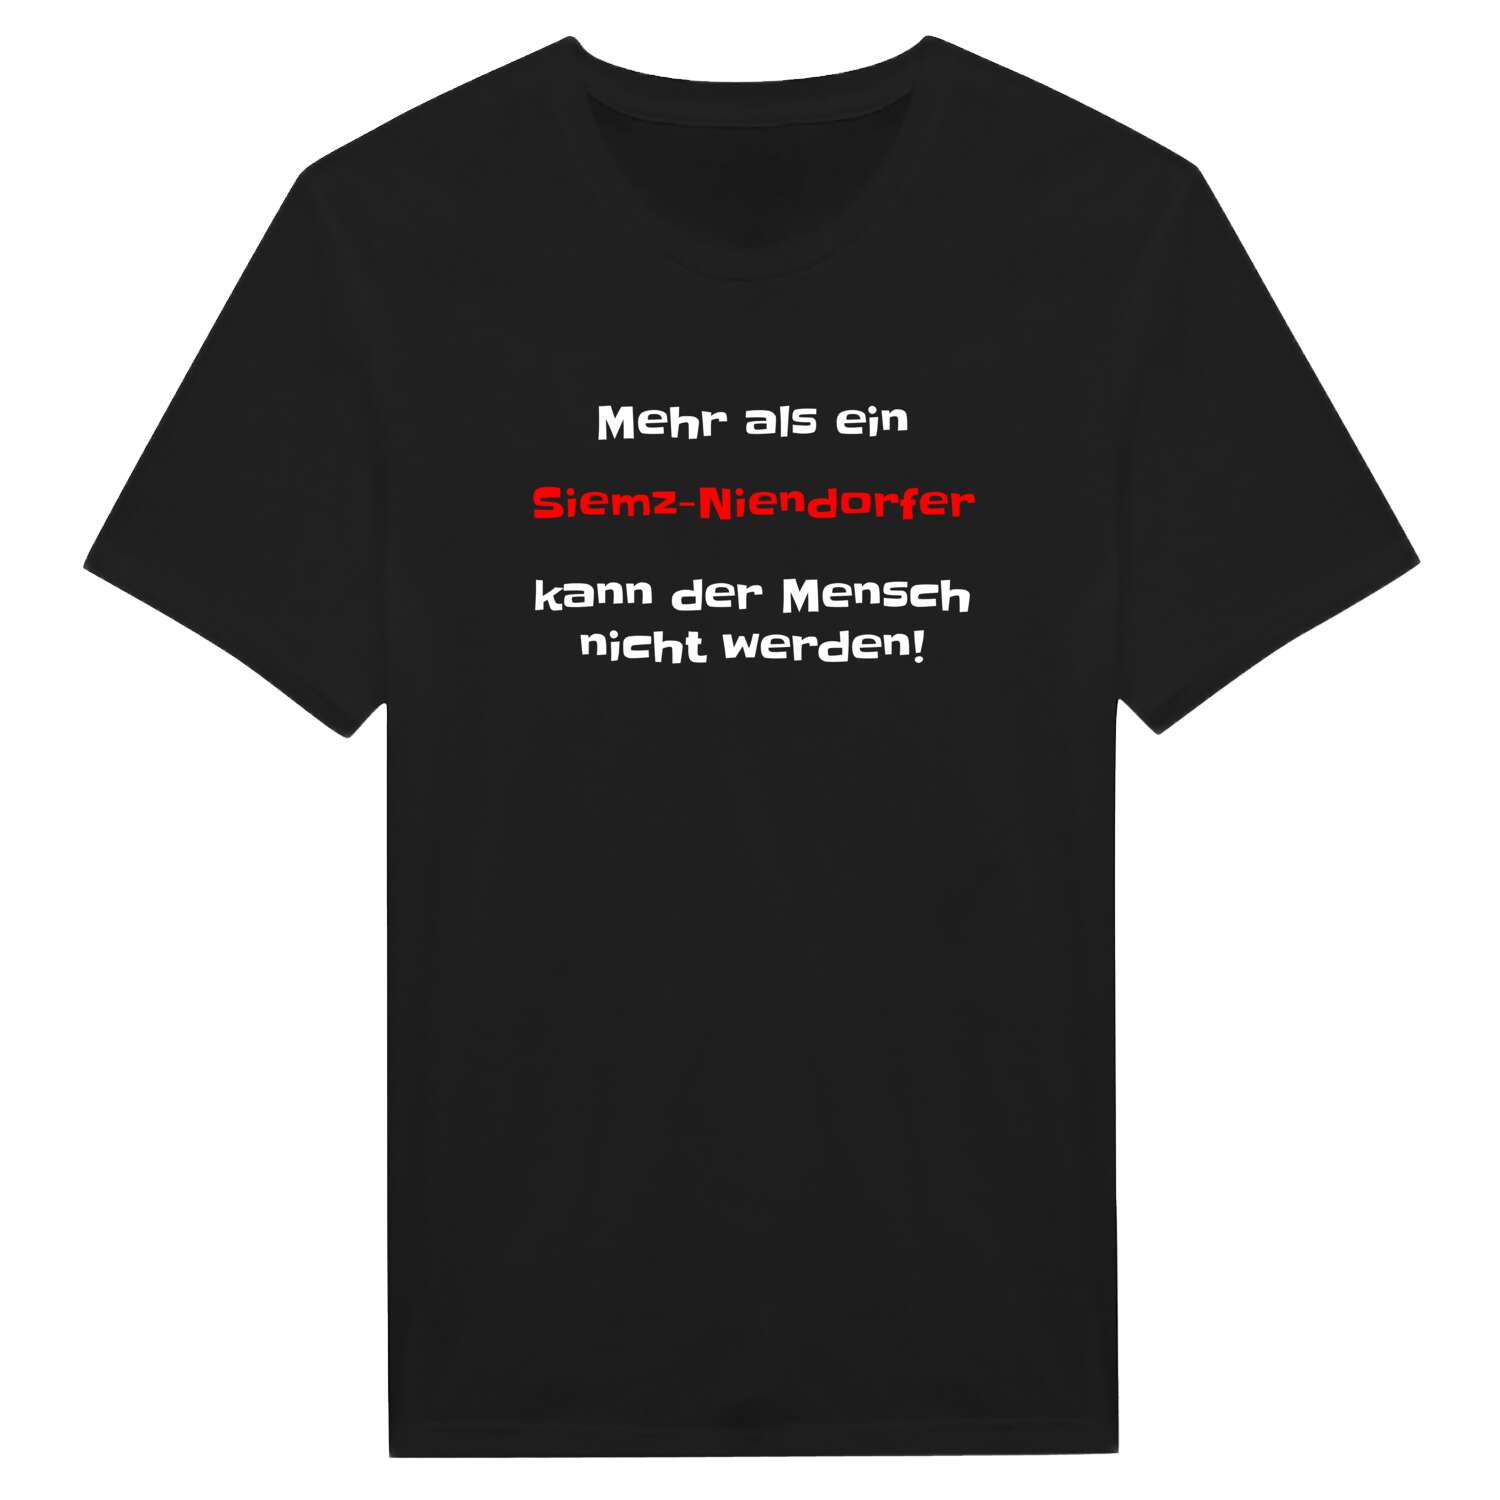 Siemz-Niendorf T-Shirt »Mehr als ein«